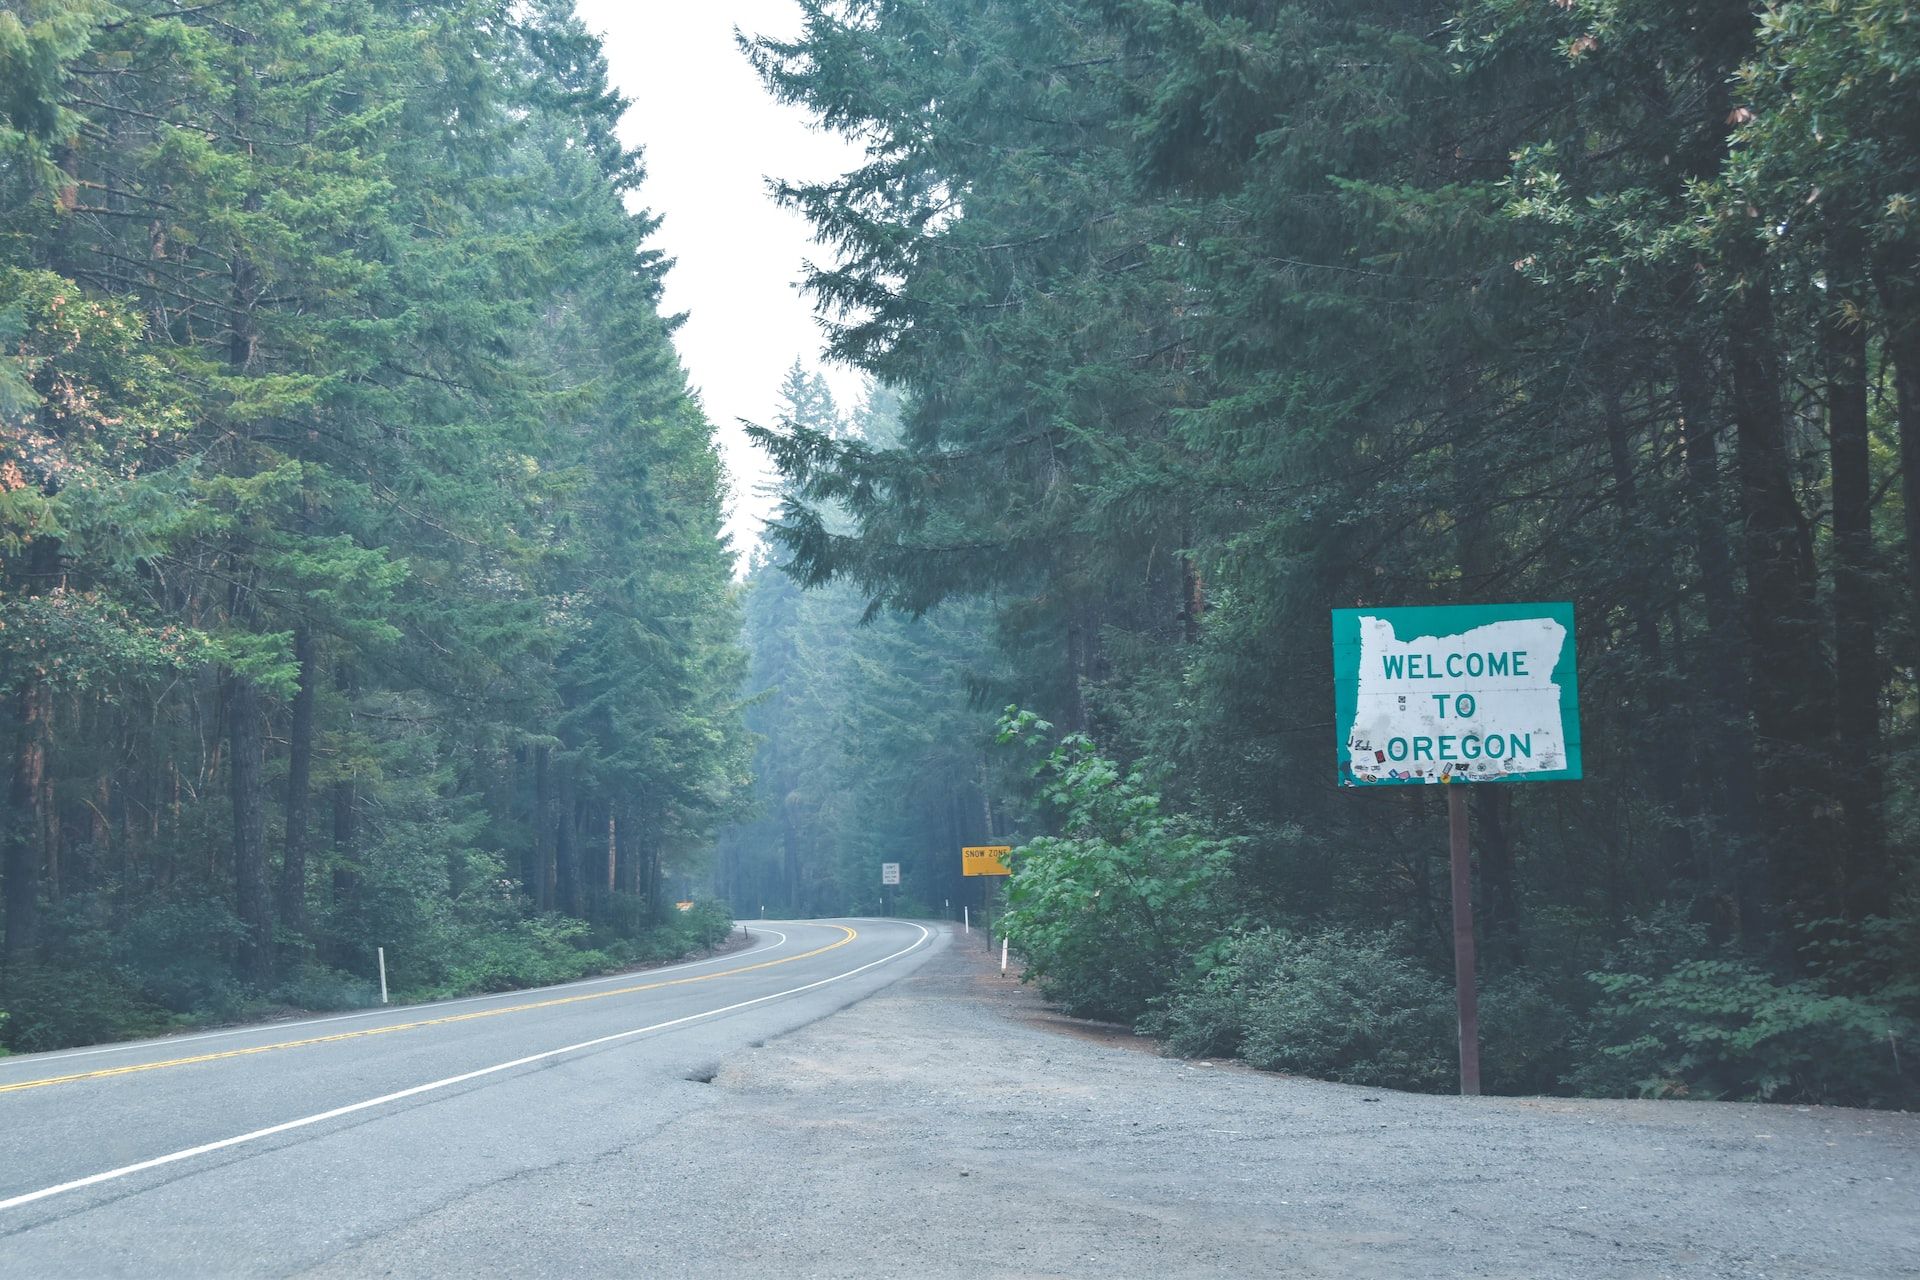 Oregon road sign